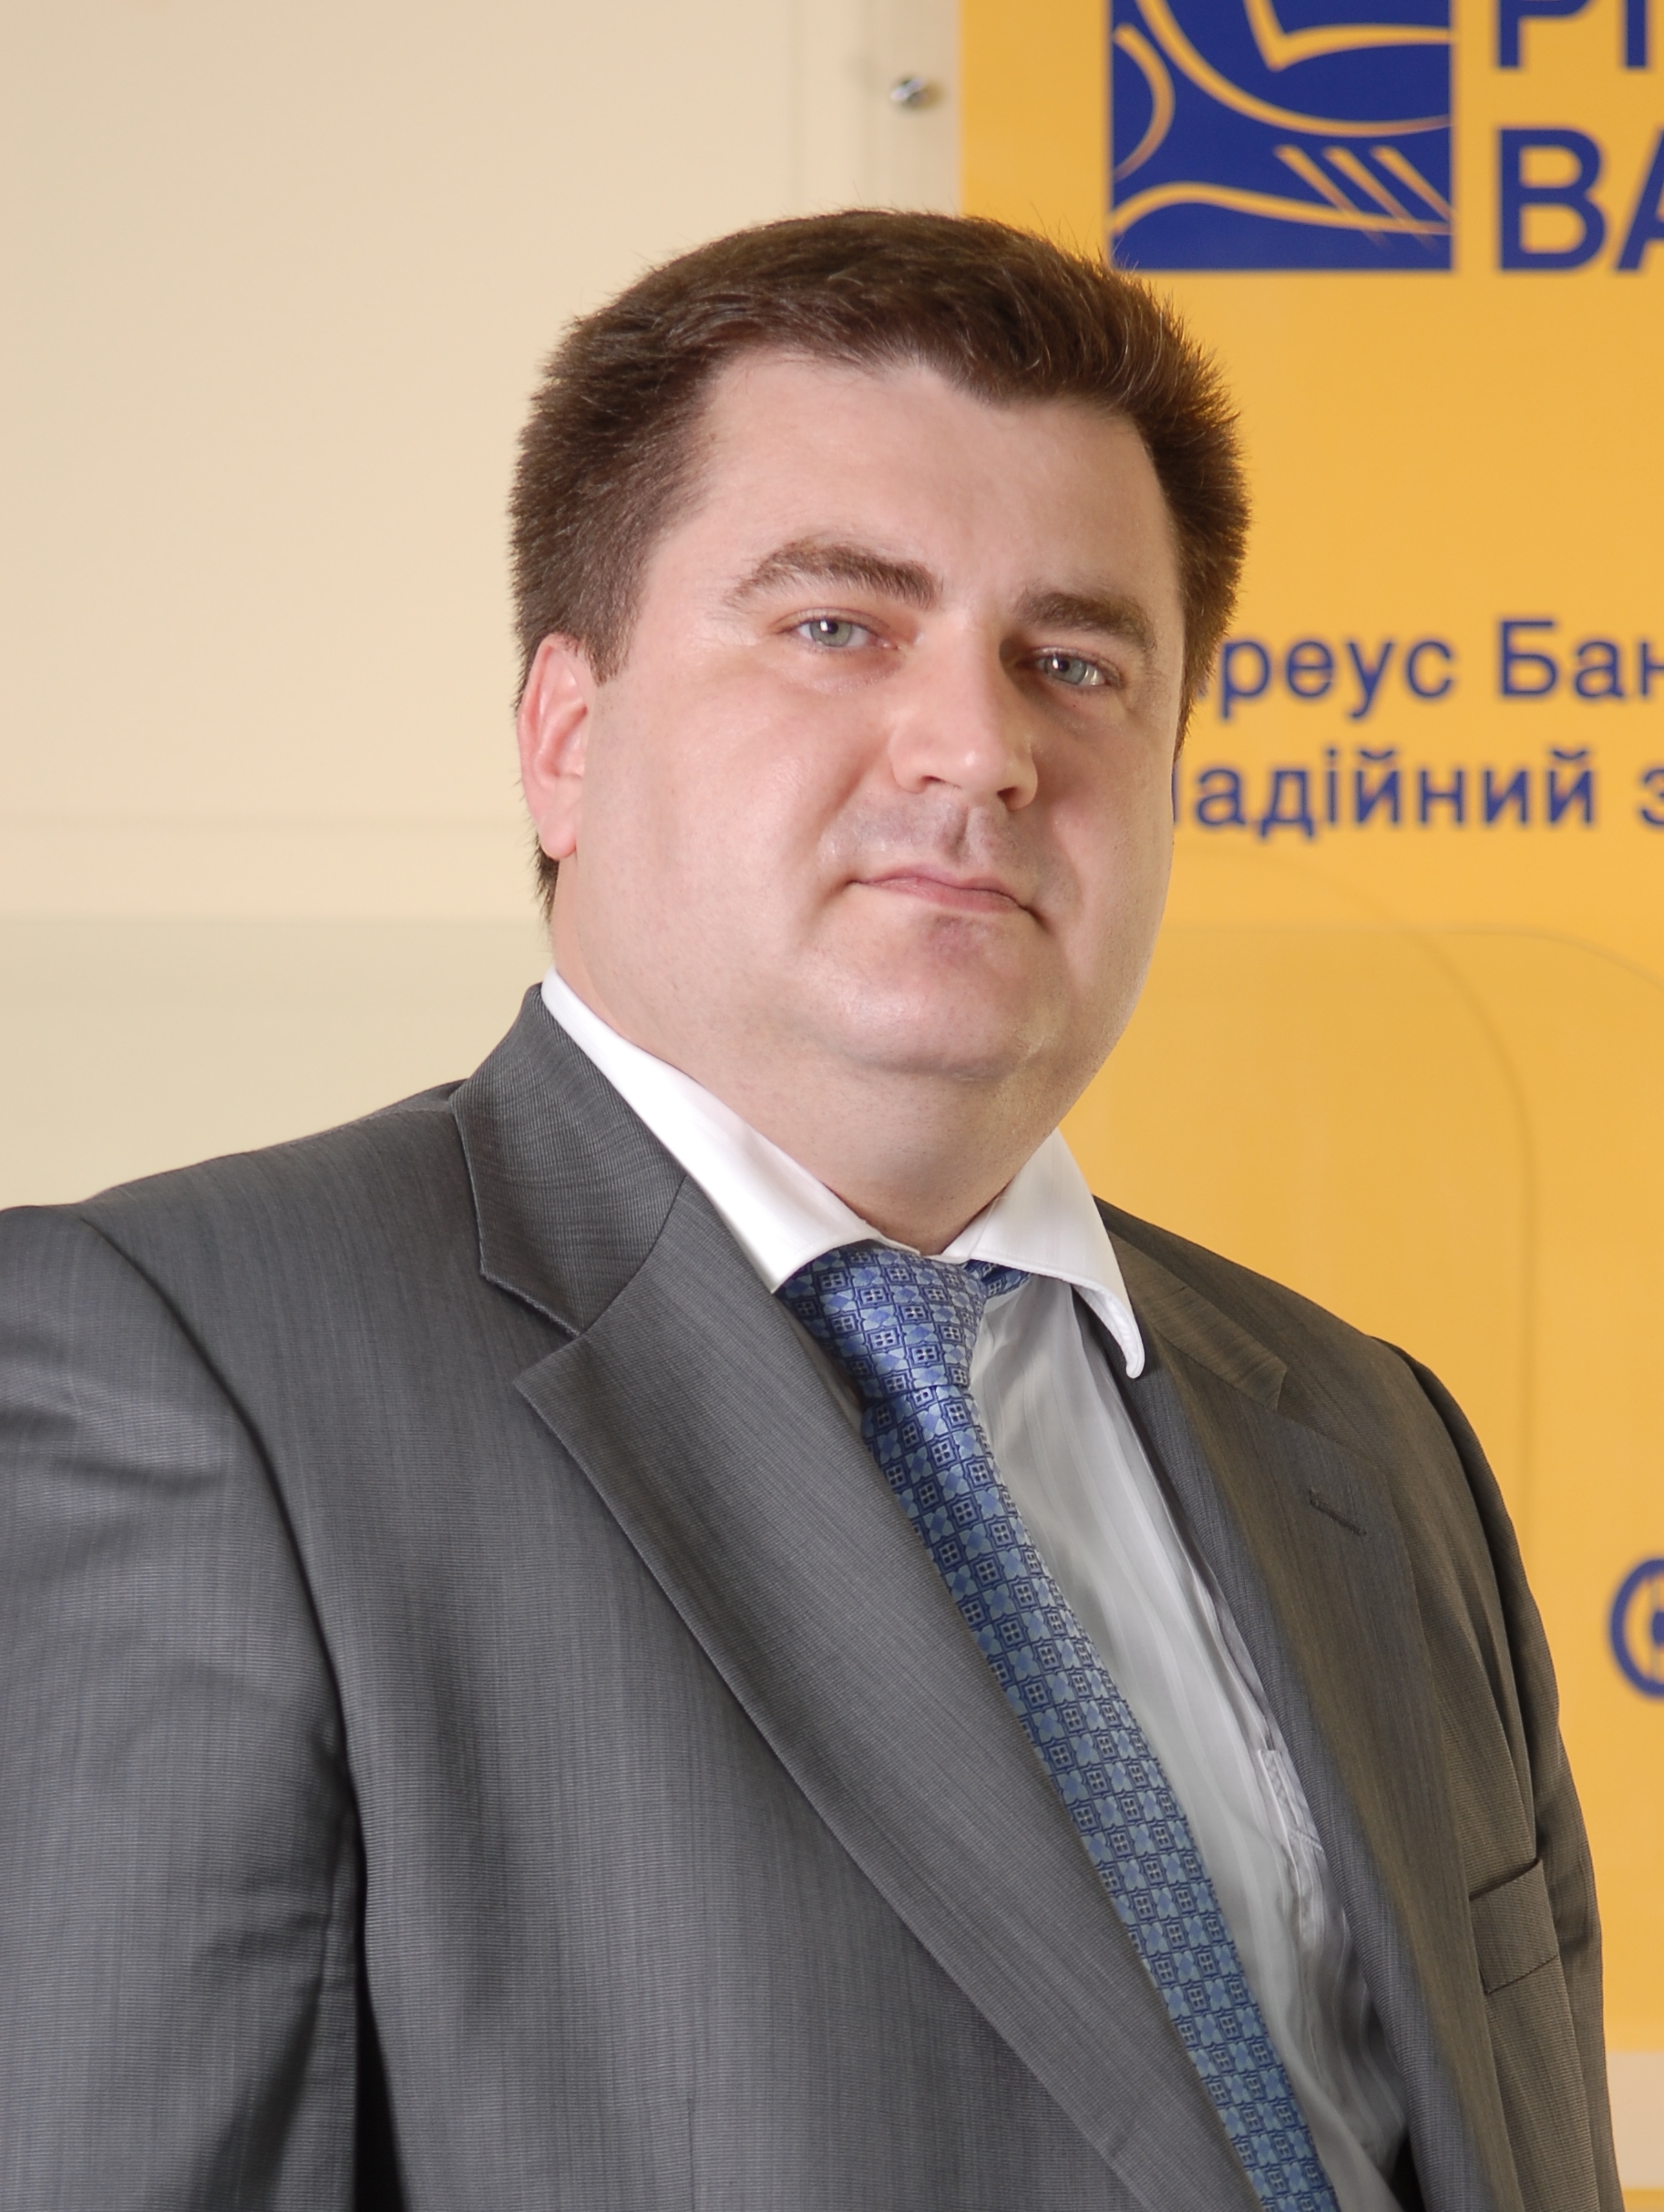 Дмитрий Мусиенко, член правления, директор департамента филиальной сети Пиреус Банка в Украине: «Удобство наших клиентов – один из ключевых показателей качества обслуживания в Пиреус Банке» 